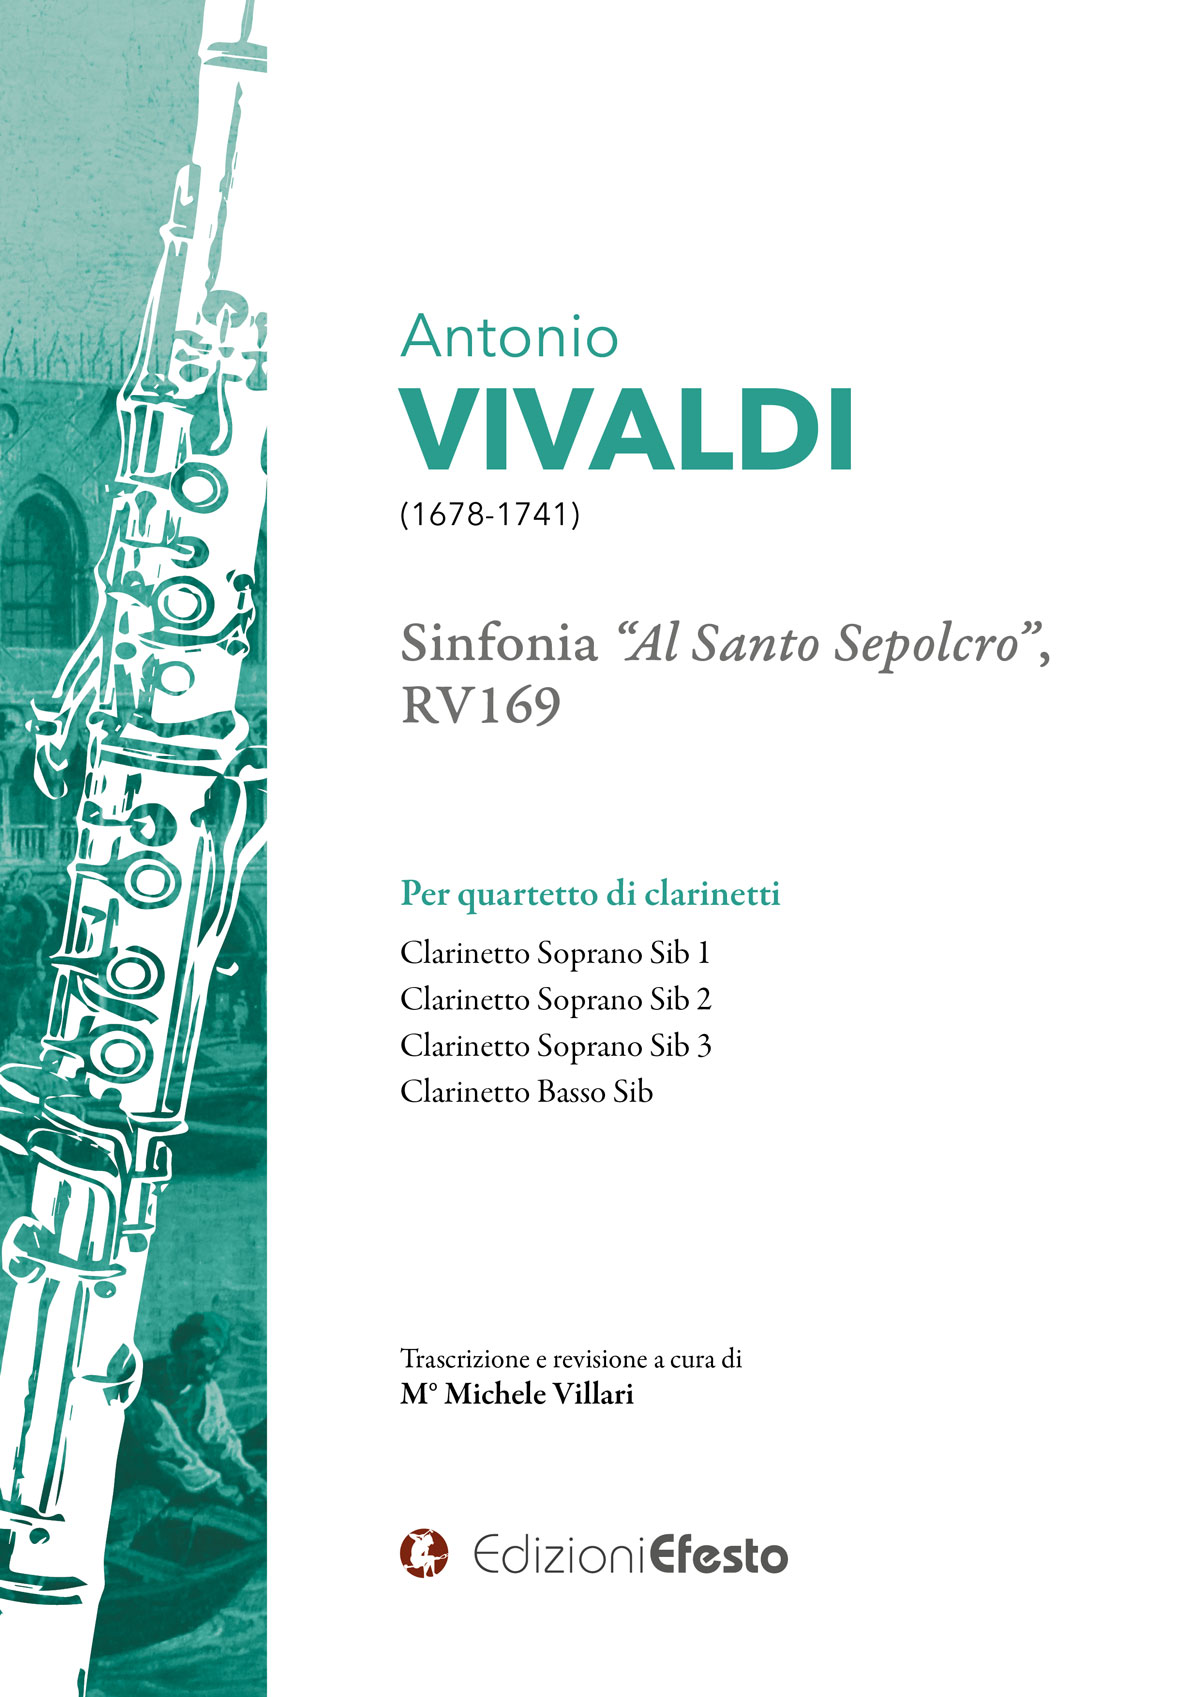 Copertina di ANTONIO VIVALDI SINFONIA “AL SANTO SEPOLCRO”, RV169 Per quartetto di clarinetti